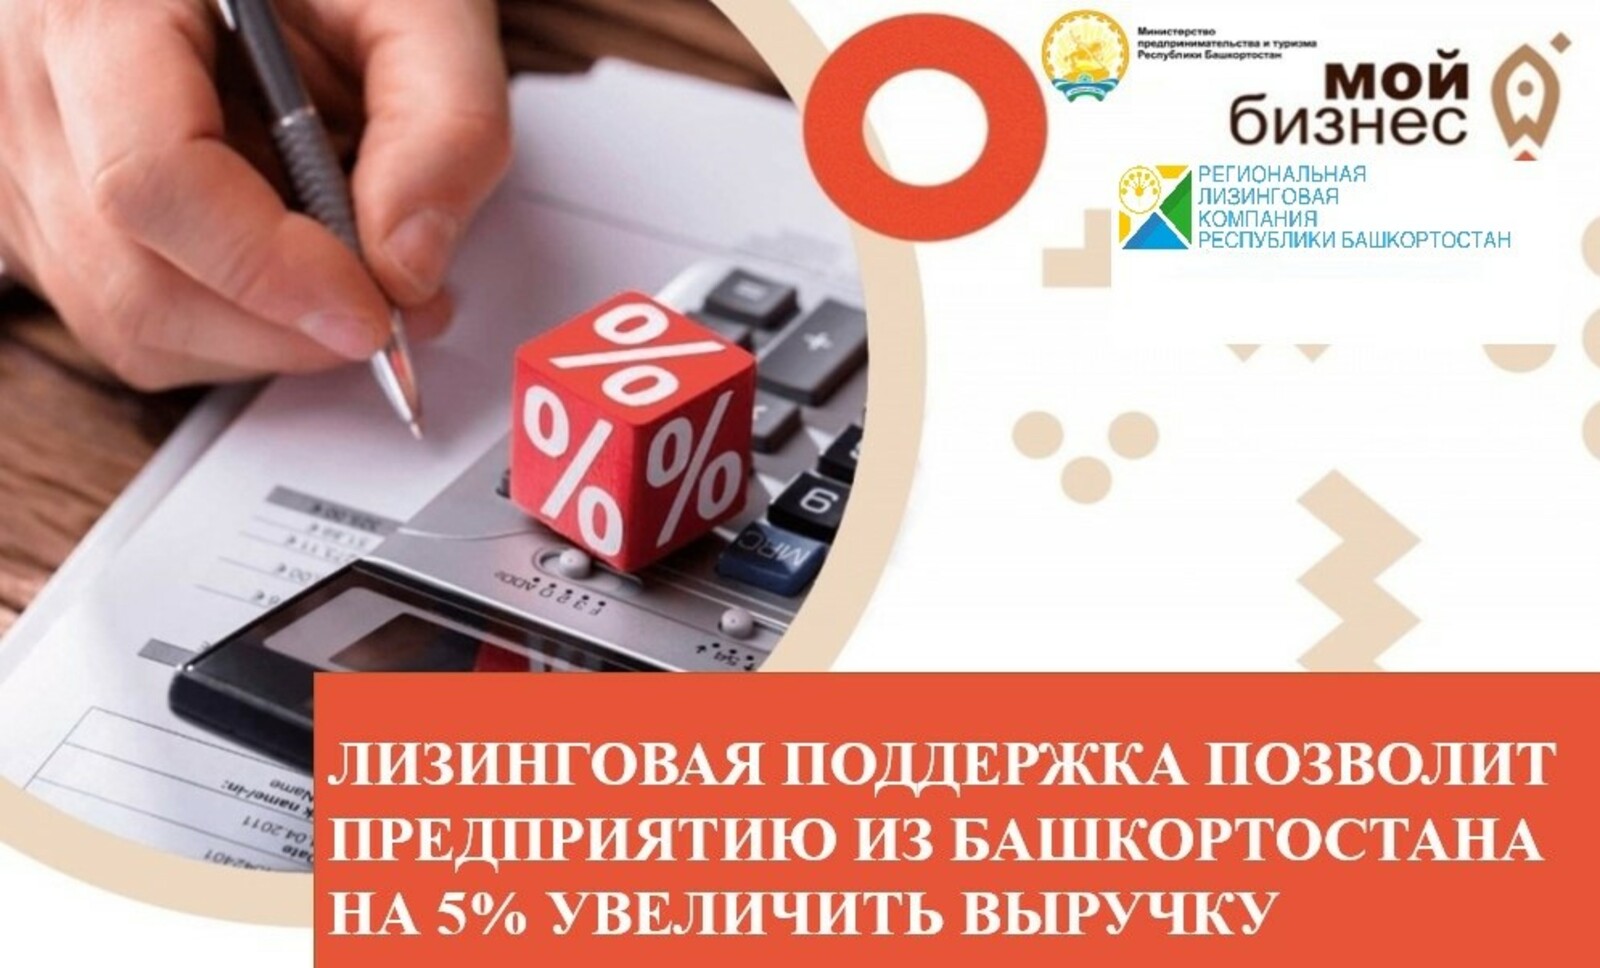 Лизинговая поддержка позволит предприятию из Башкортостана на 5% увеличить выручку